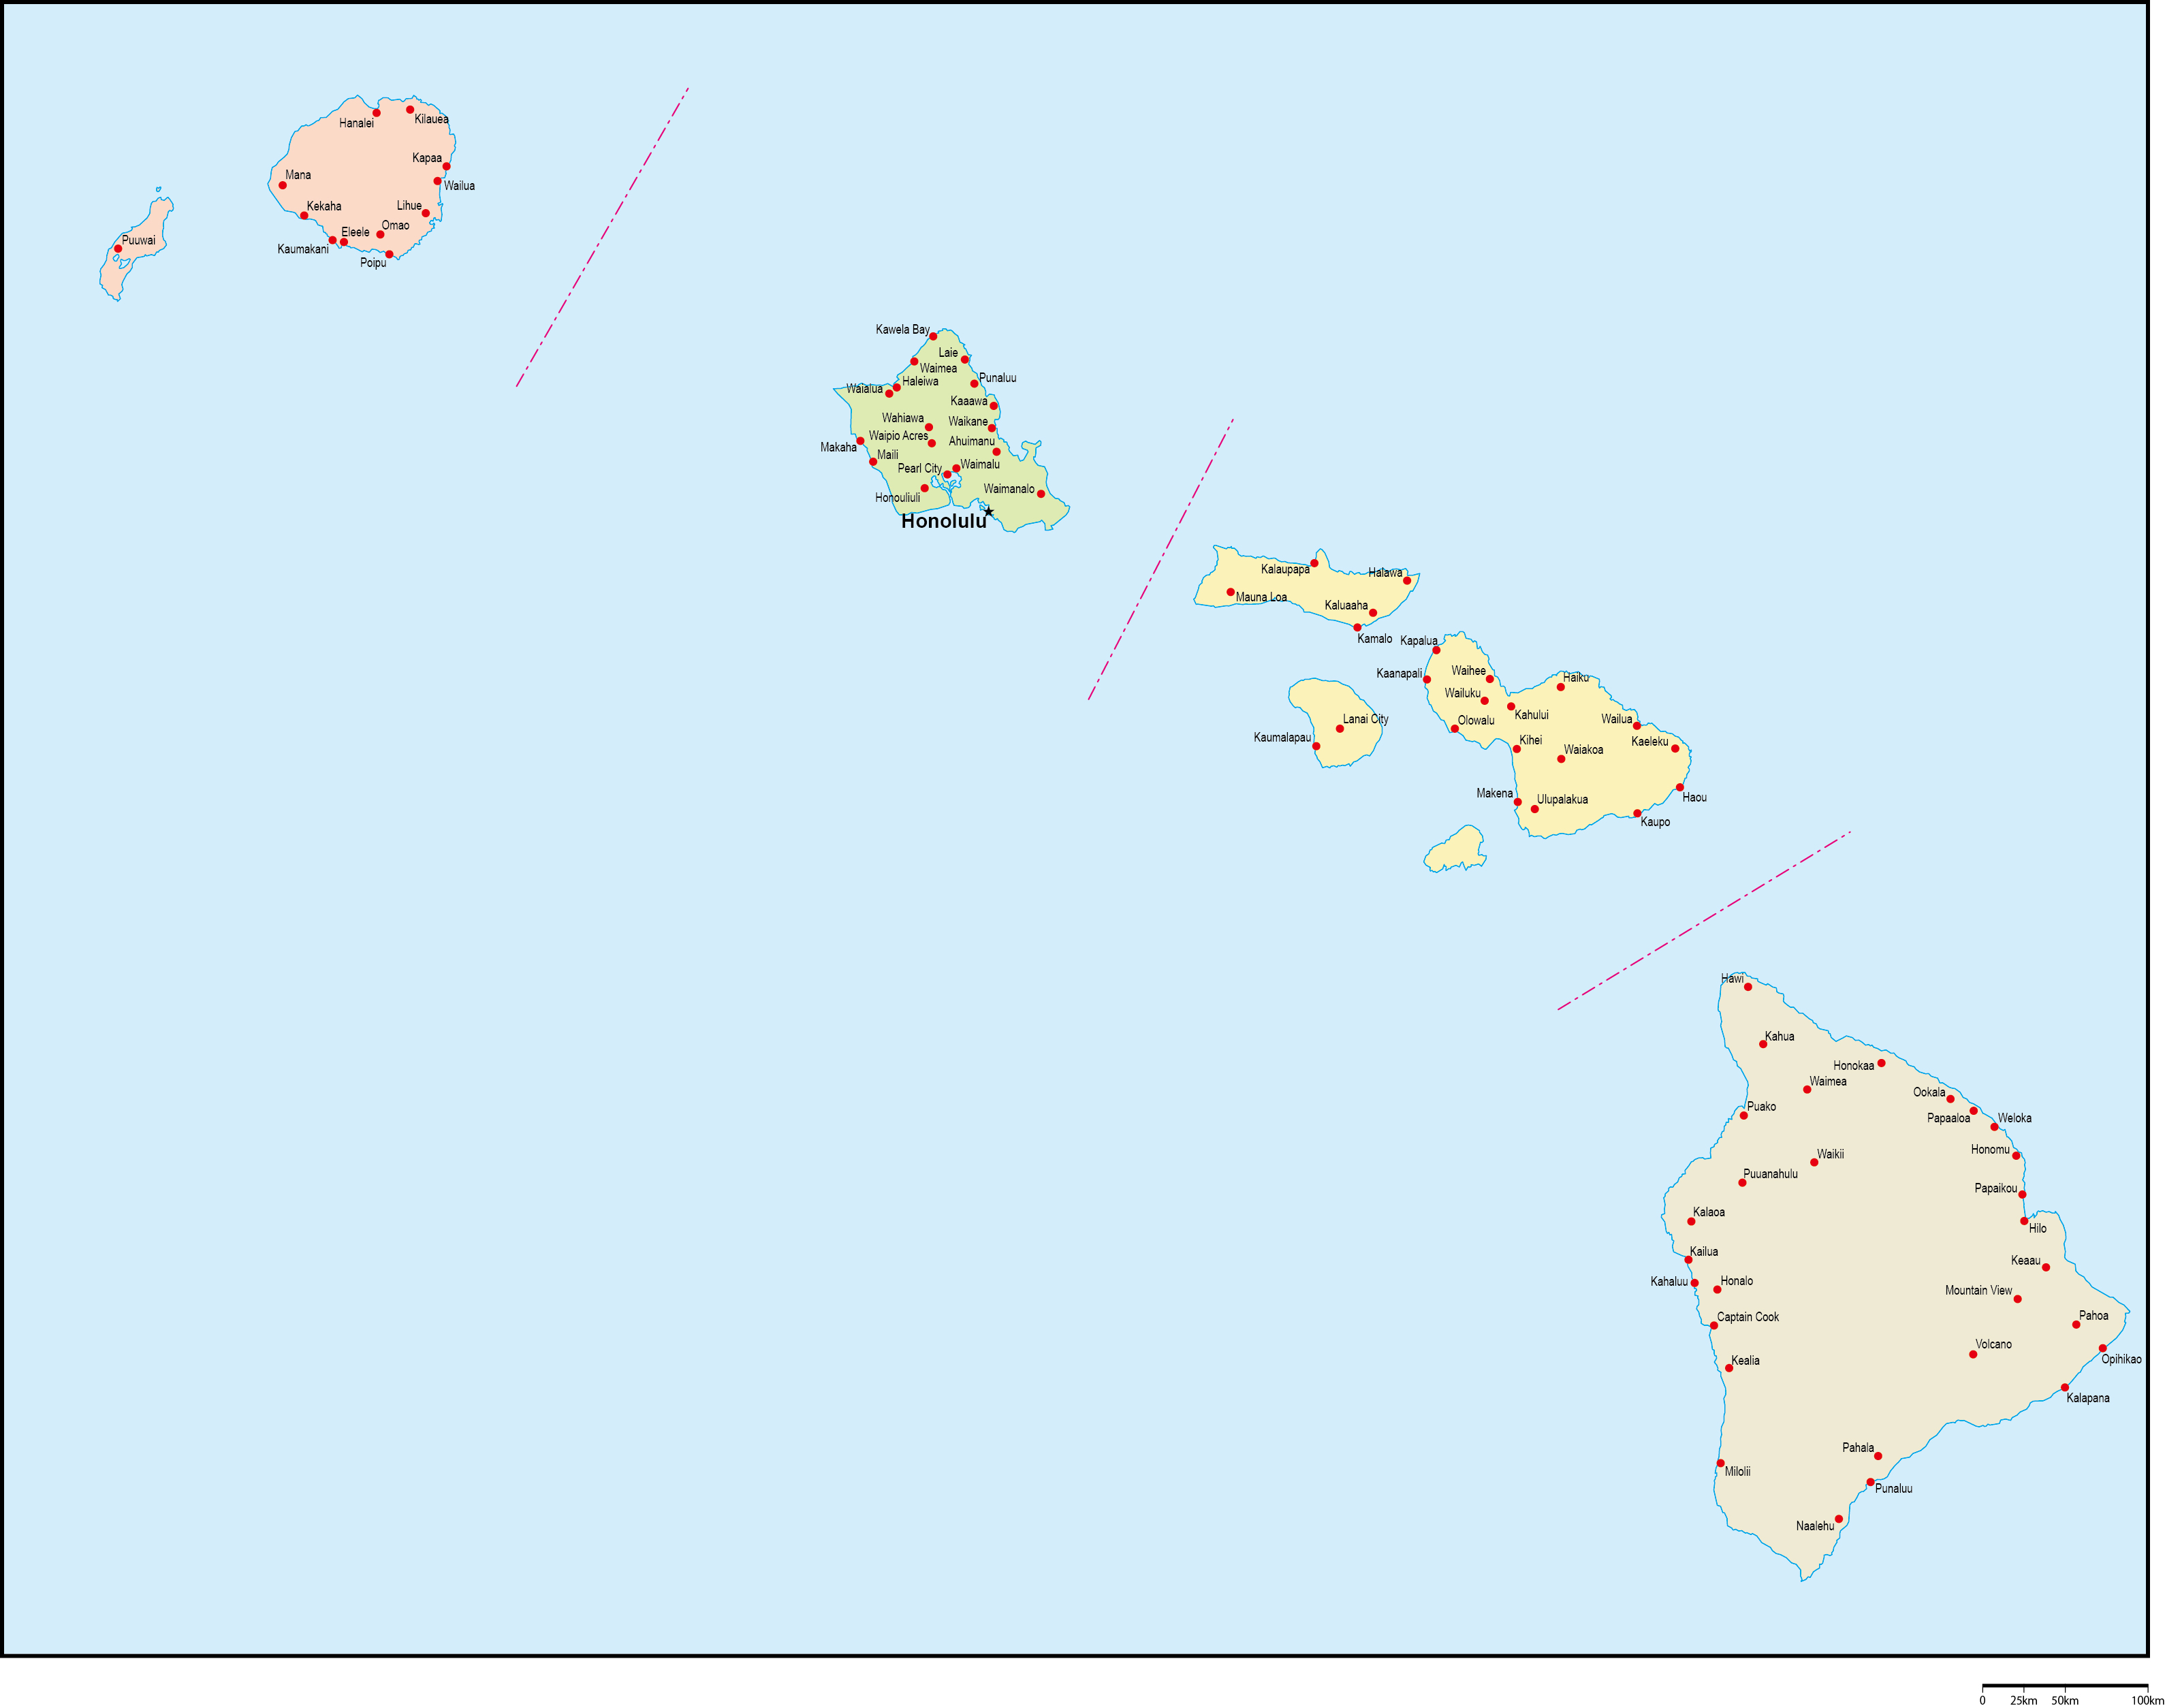 ハワイ州郡色分け地図州都・主な都市あり(英語)フリーデータの画像